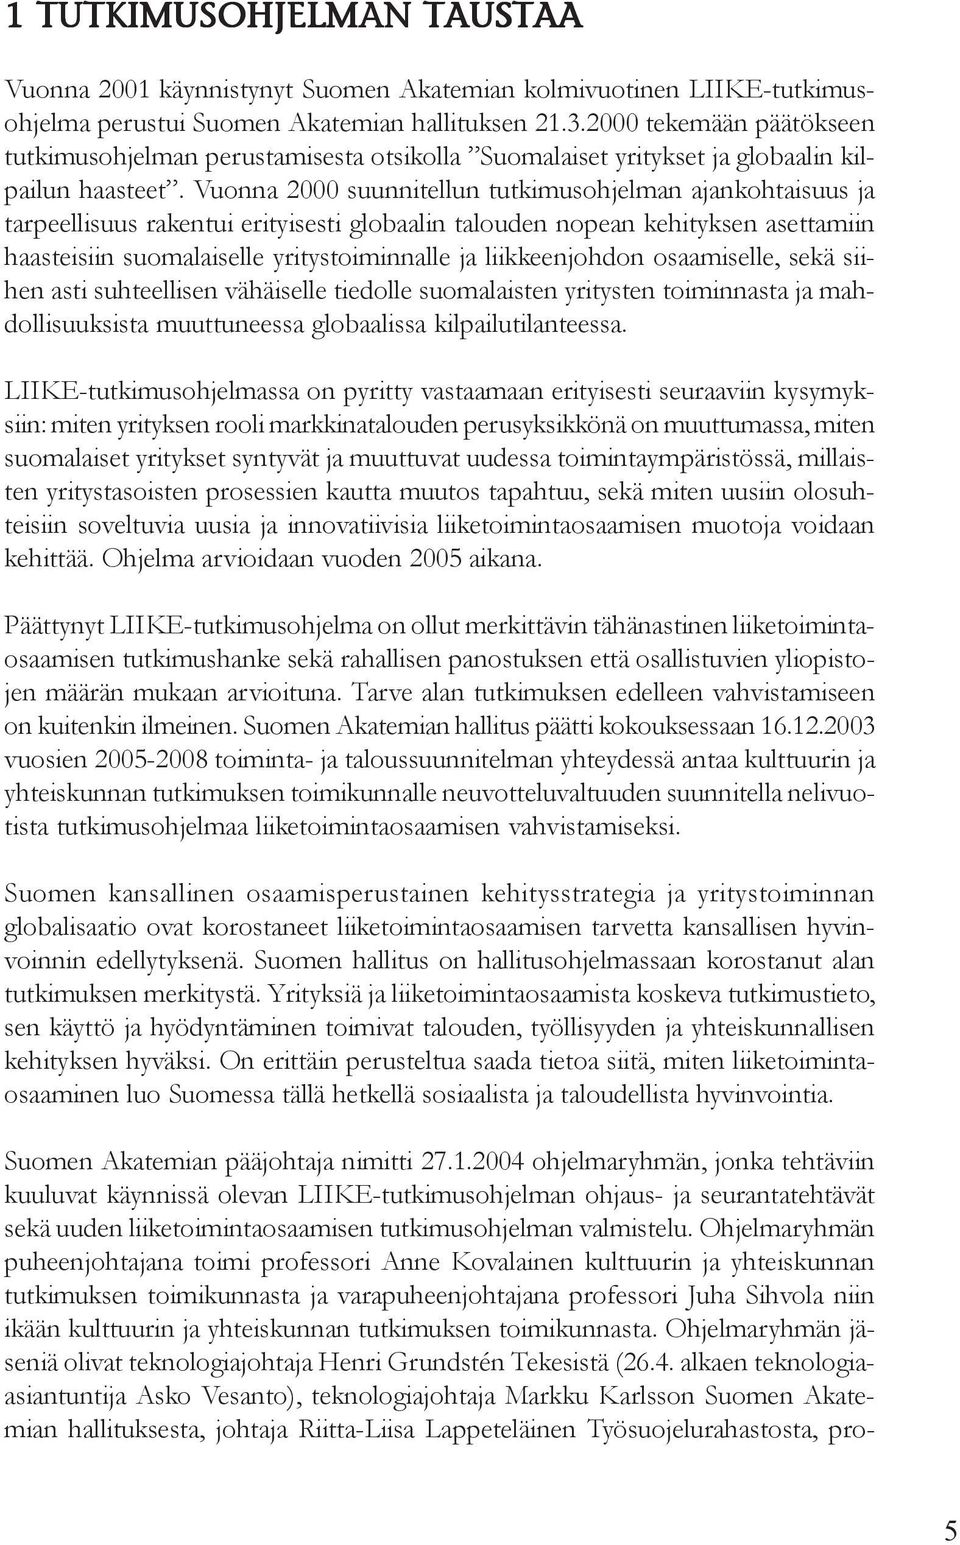 Vuonna 2000 suunnitellun tutkimusohjelman ajankohtaisuus ja tarpeellisuus rakentui erityisesti globaalin talouden nopean kehityksen asettamiin haasteisiin suomalaiselle yritystoiminnalle ja